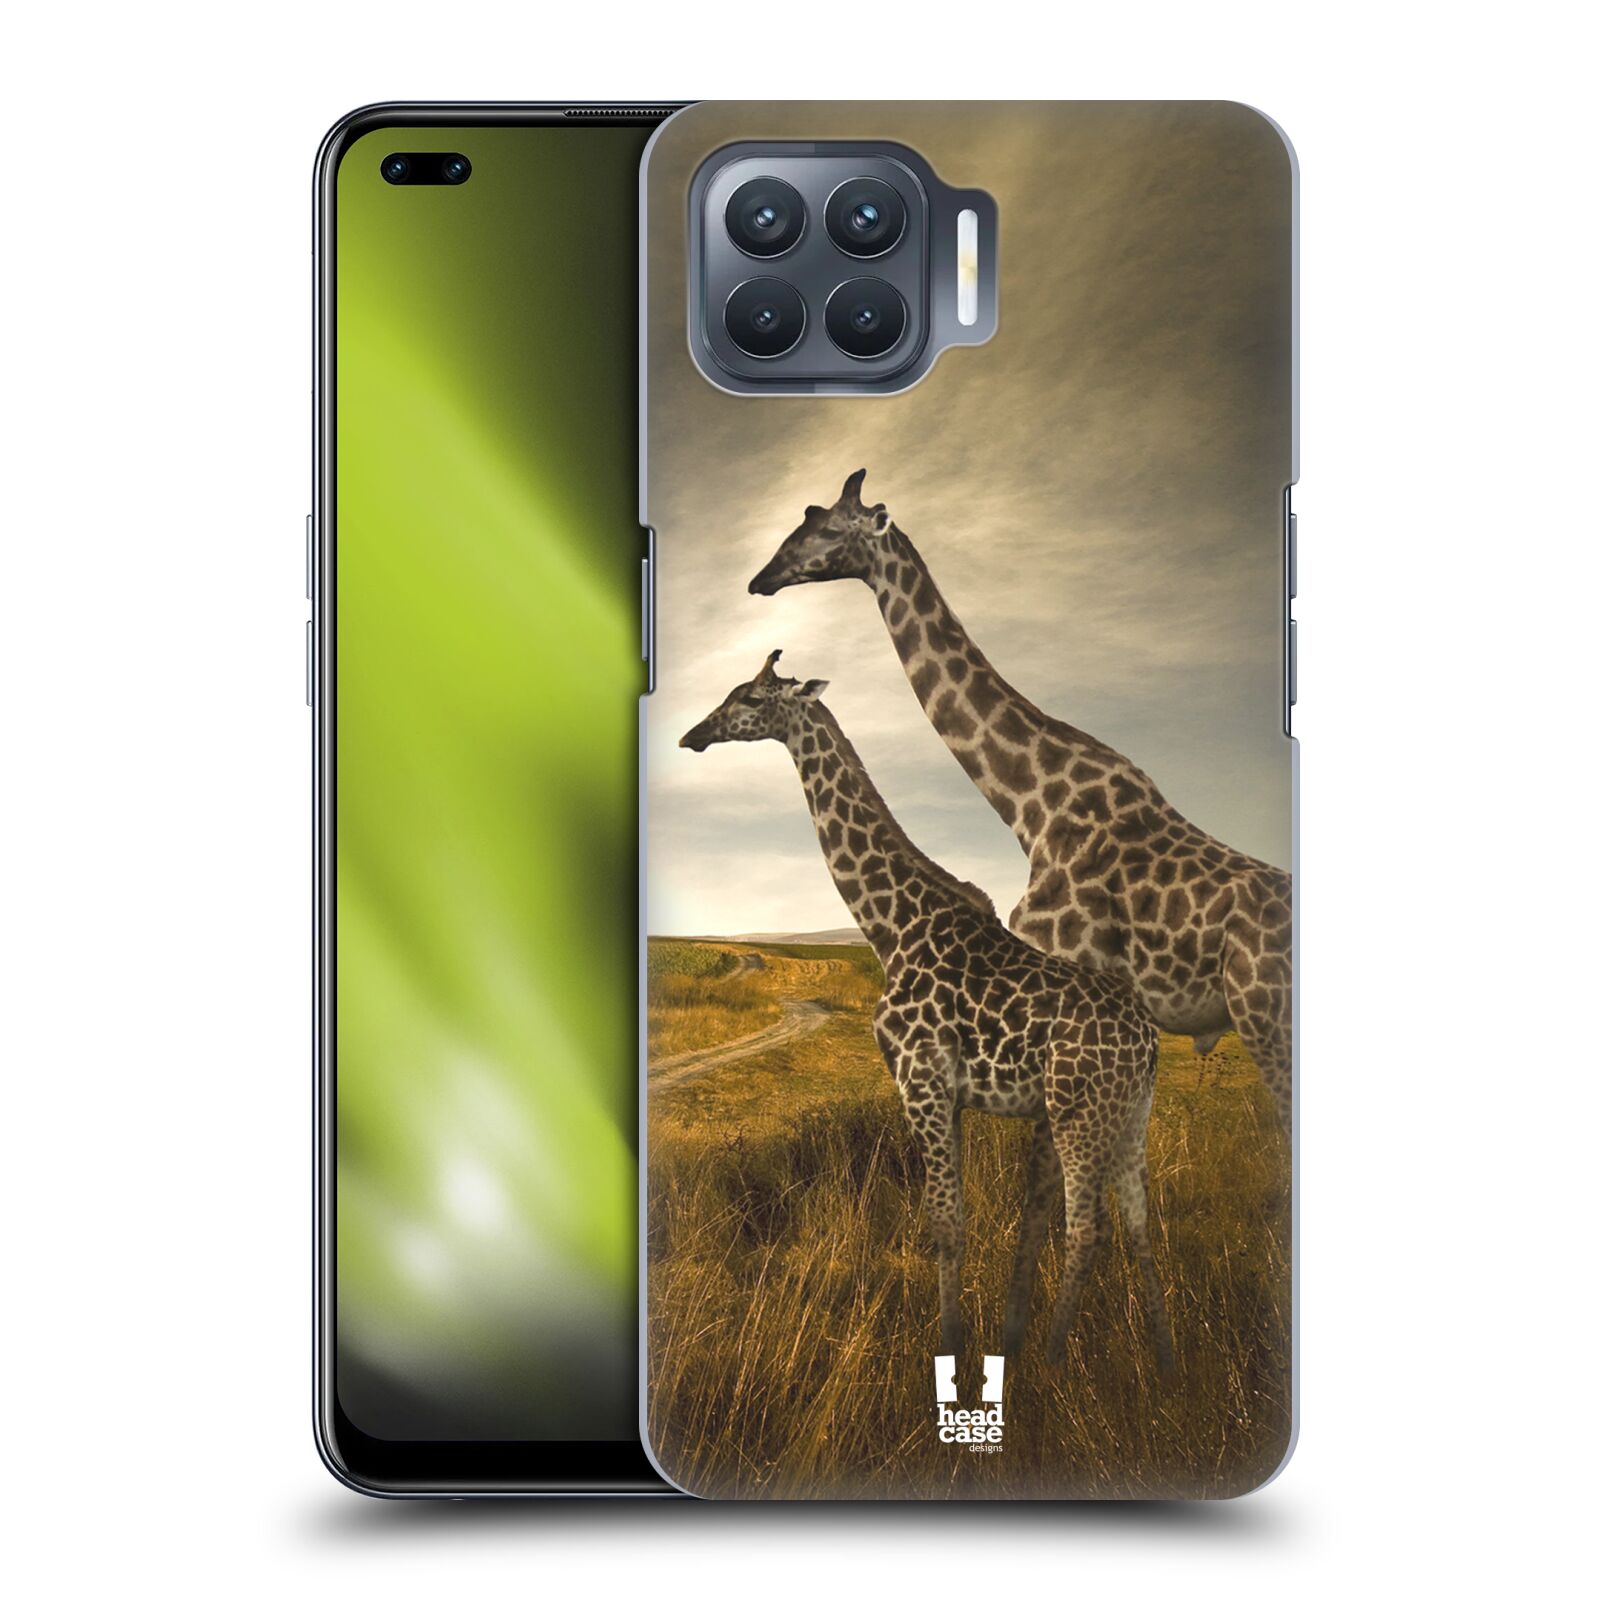 Zadní obal pro mobil Oppo Reno 4 LITE - HEAD CASE - Svět zvířat žirafy